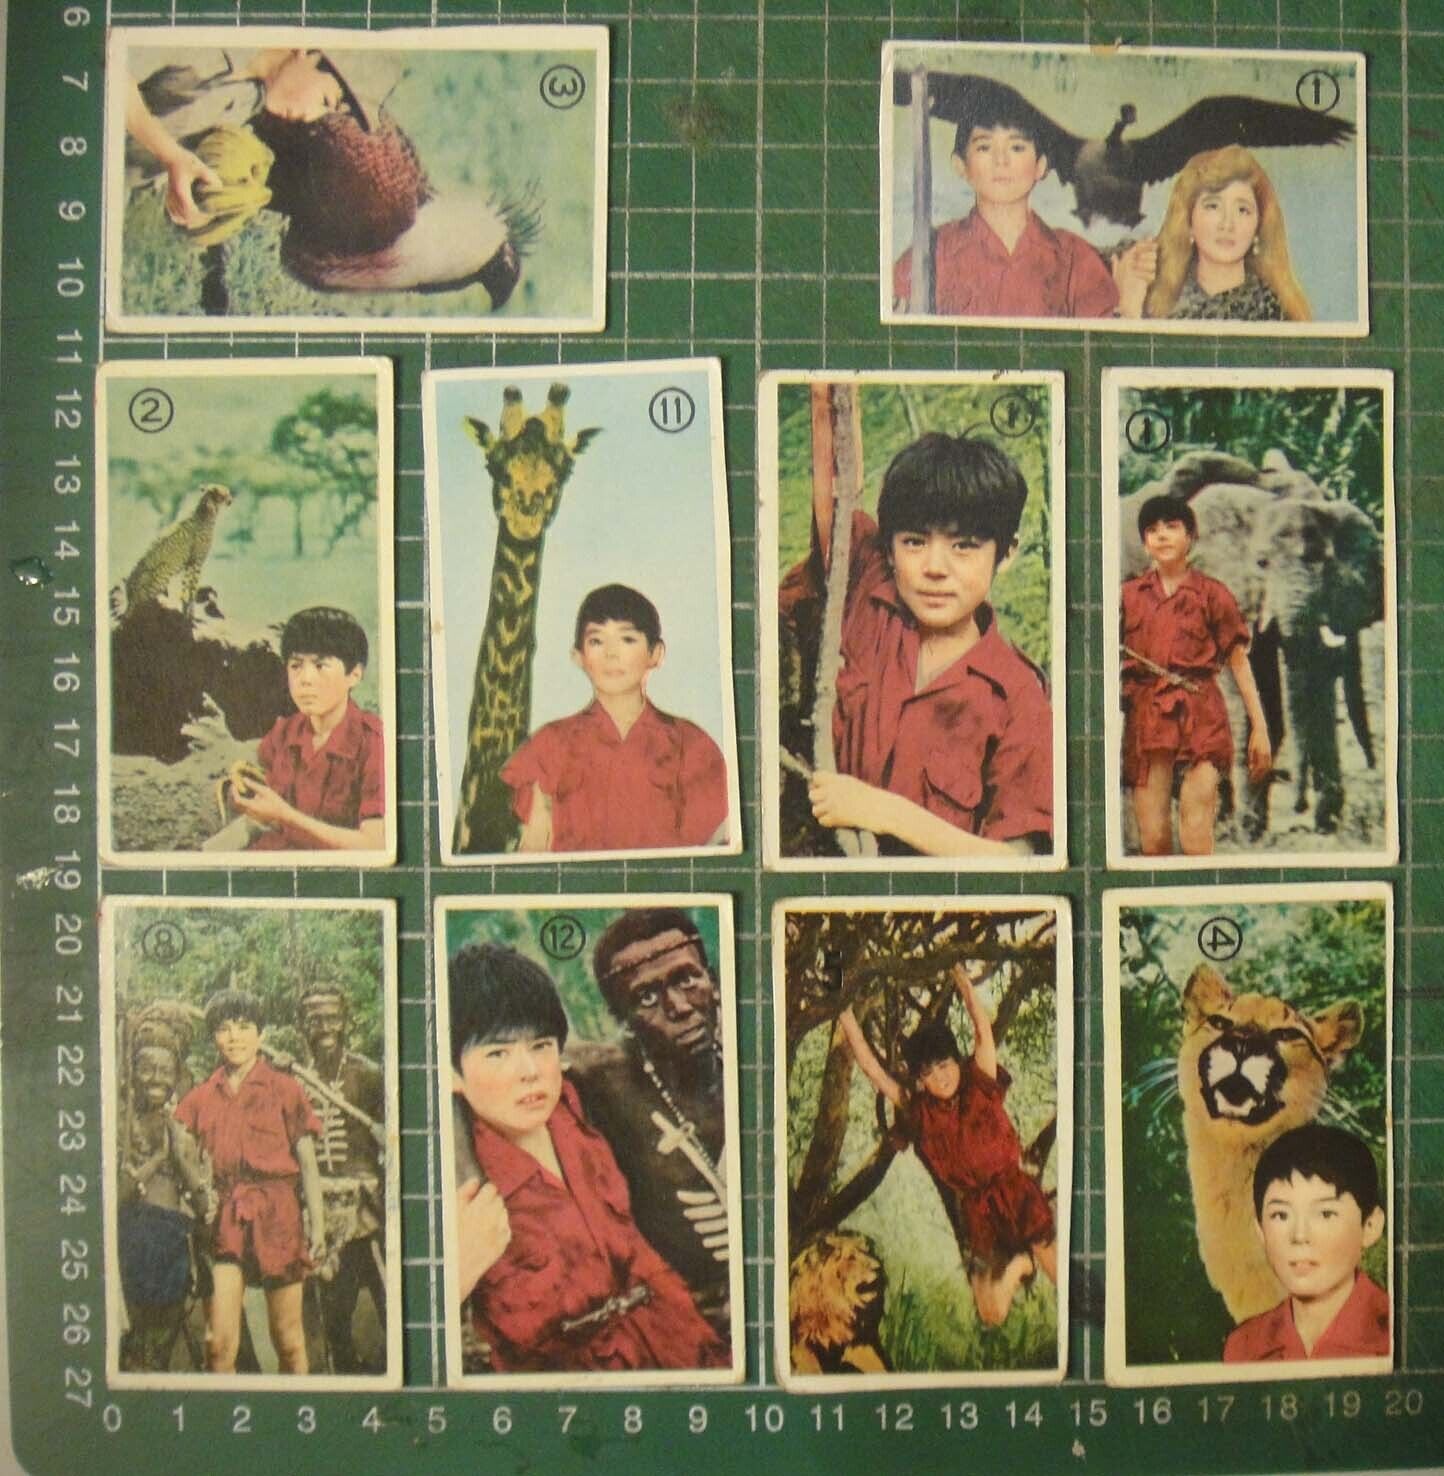 BS1-196) vintage 1960's Japan Menko Trading Cards ~ Kenya Boy (少年ケニヤ) x 10